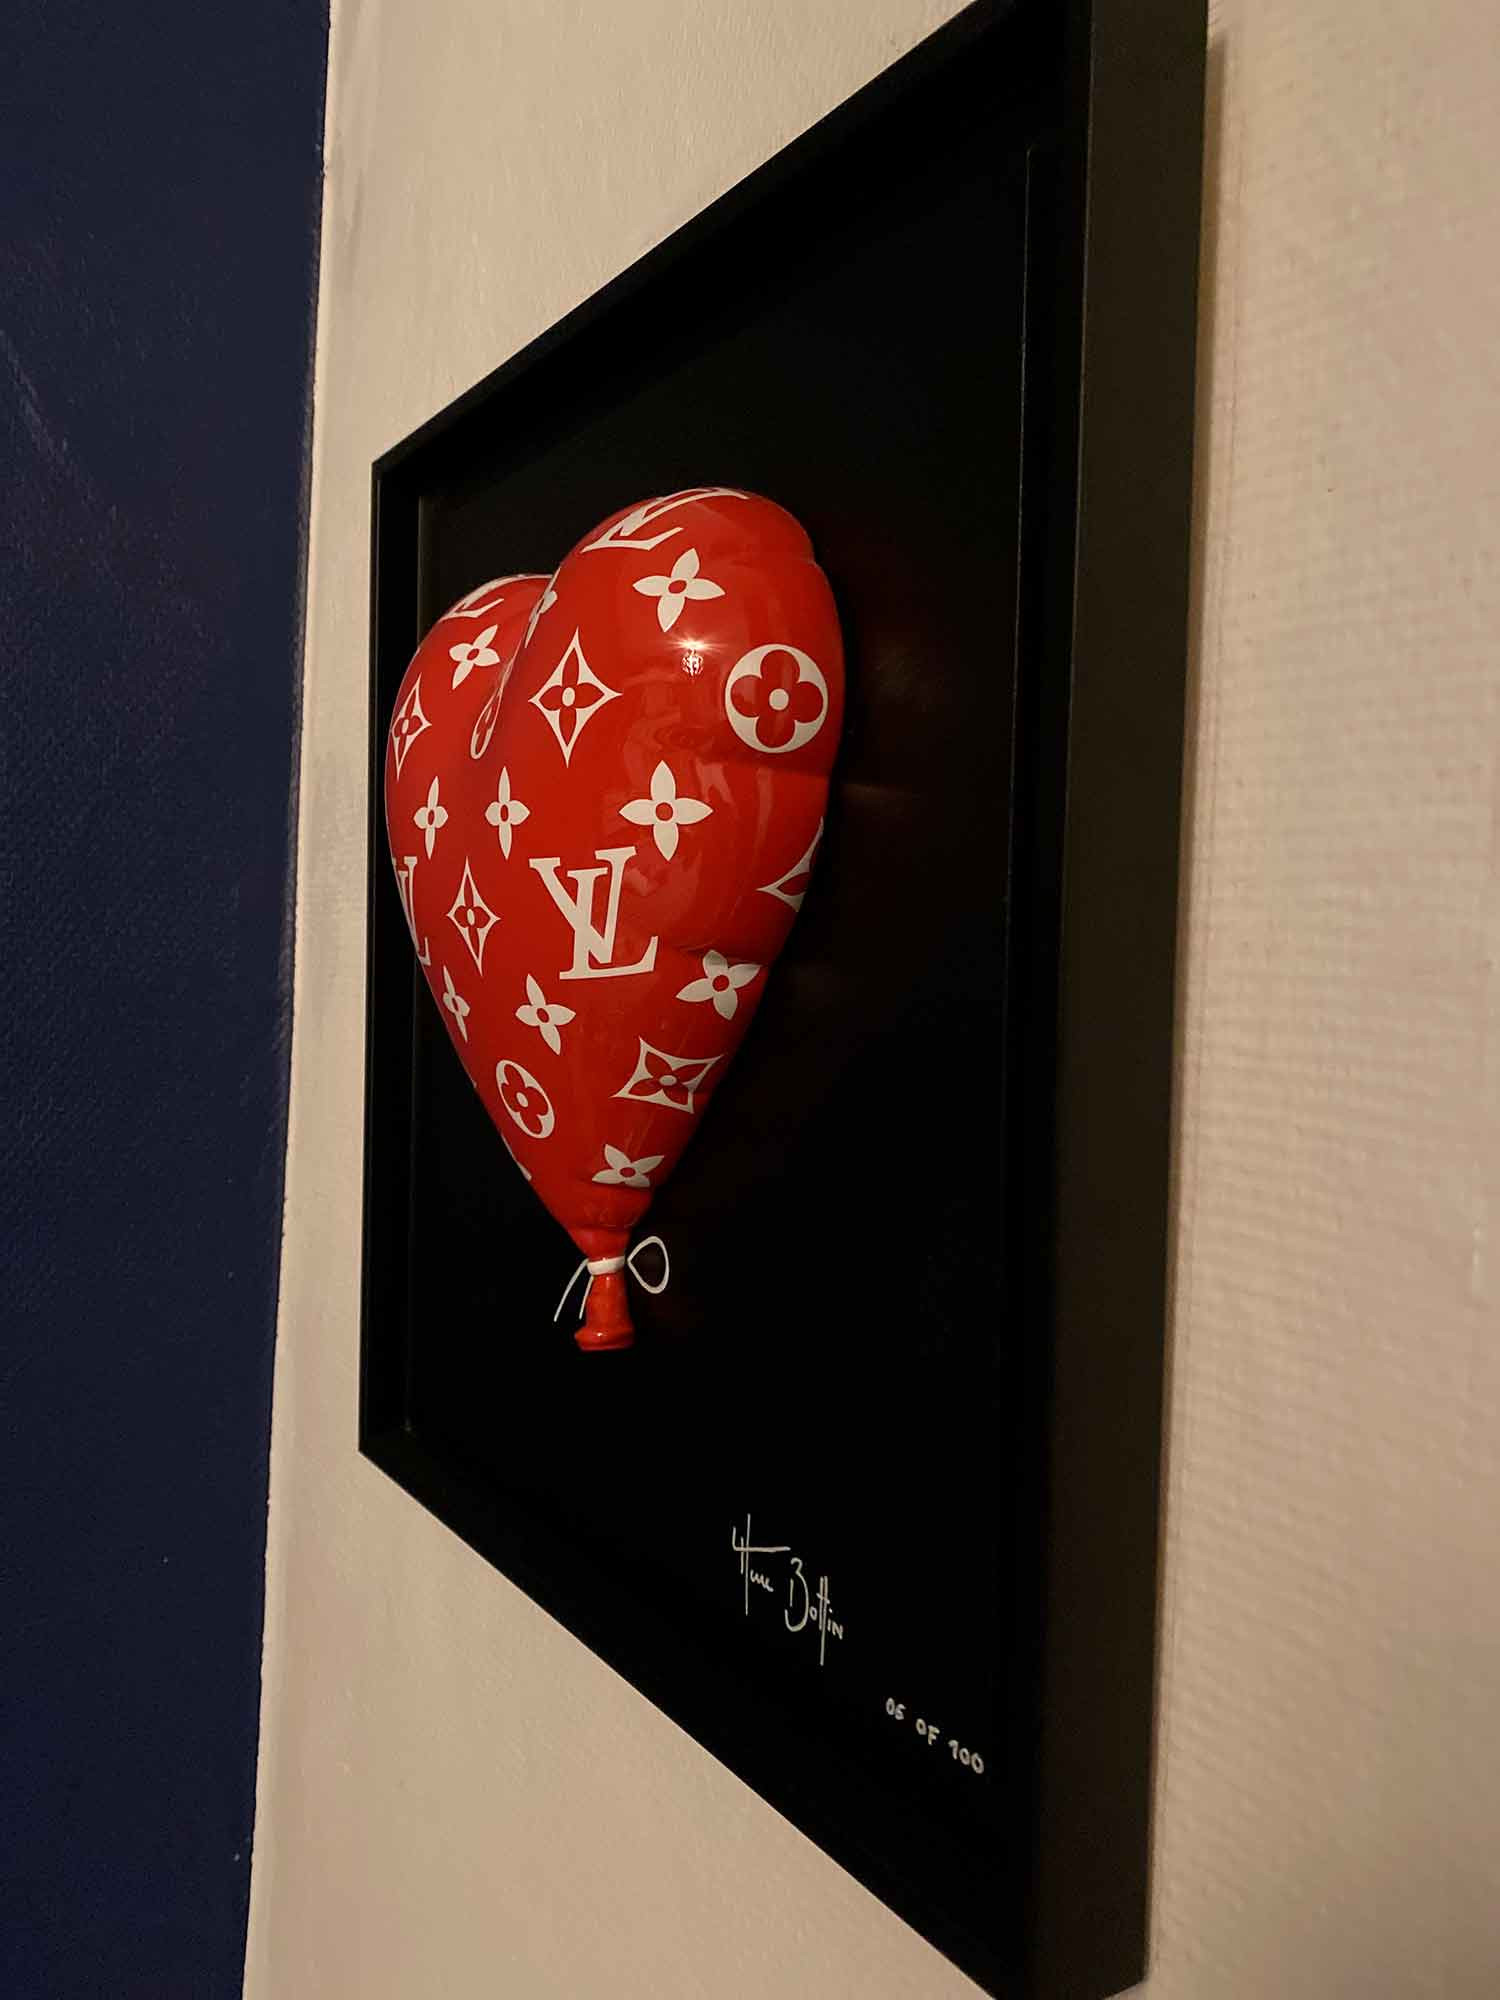 Contemporary Art - Mixed media - Heart Ballon Louis Vuitton - Marc Boffin